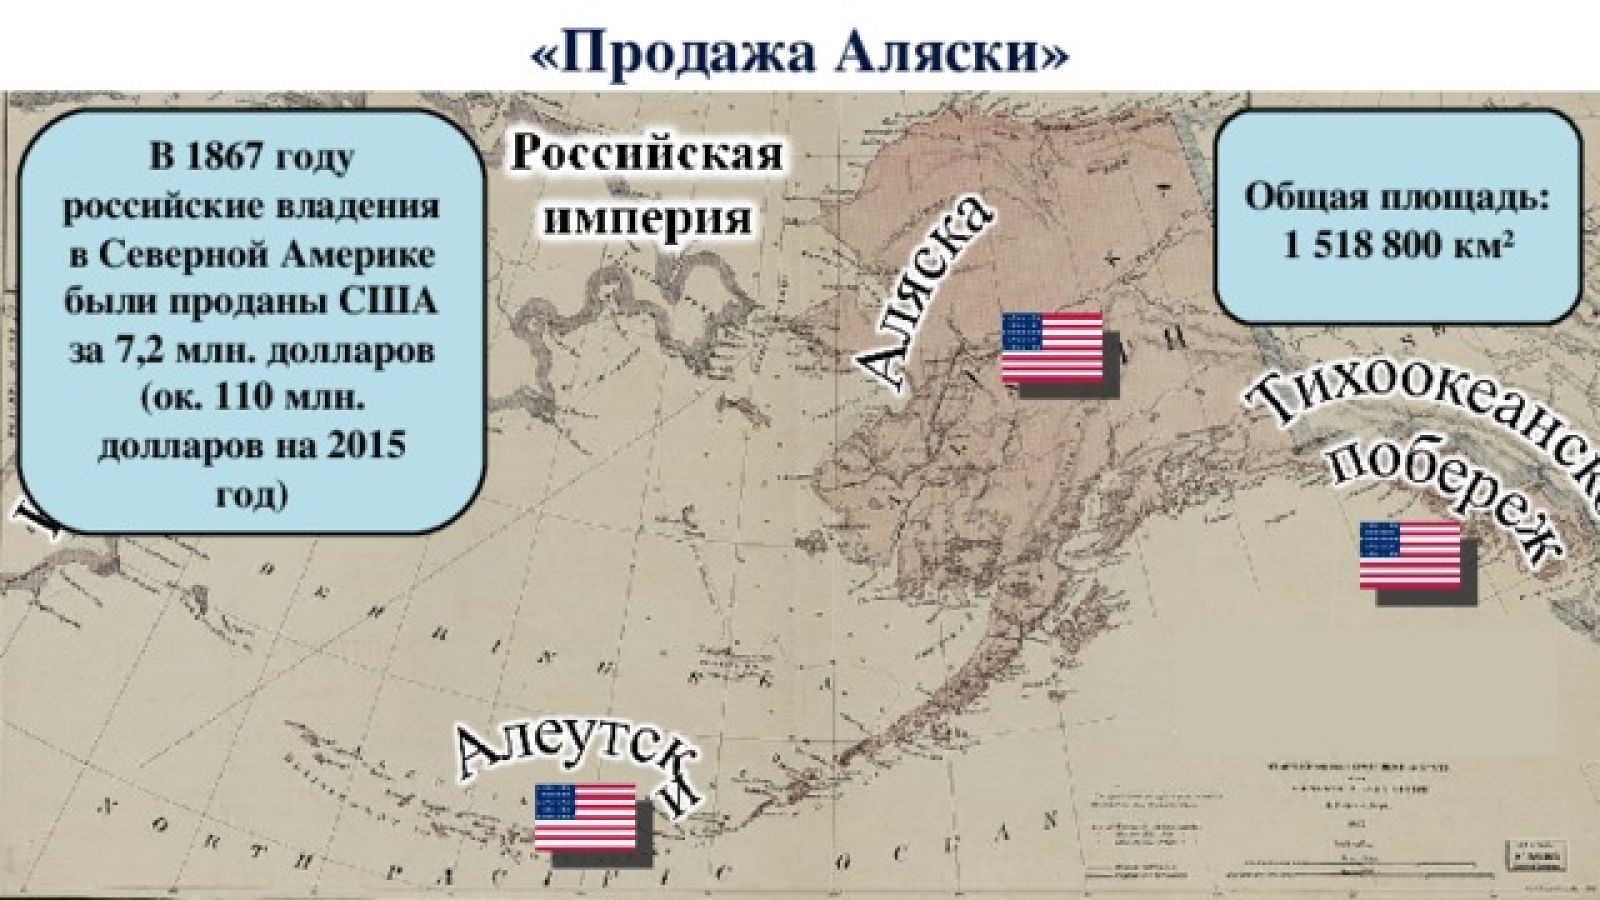 18 Октября 1867 года Аляска передана США. 1867 – Россия продала Аляску США. Территория продана Россией США В 1867 году. 1867 Год передача Аляски США. Сколько времени на аляске